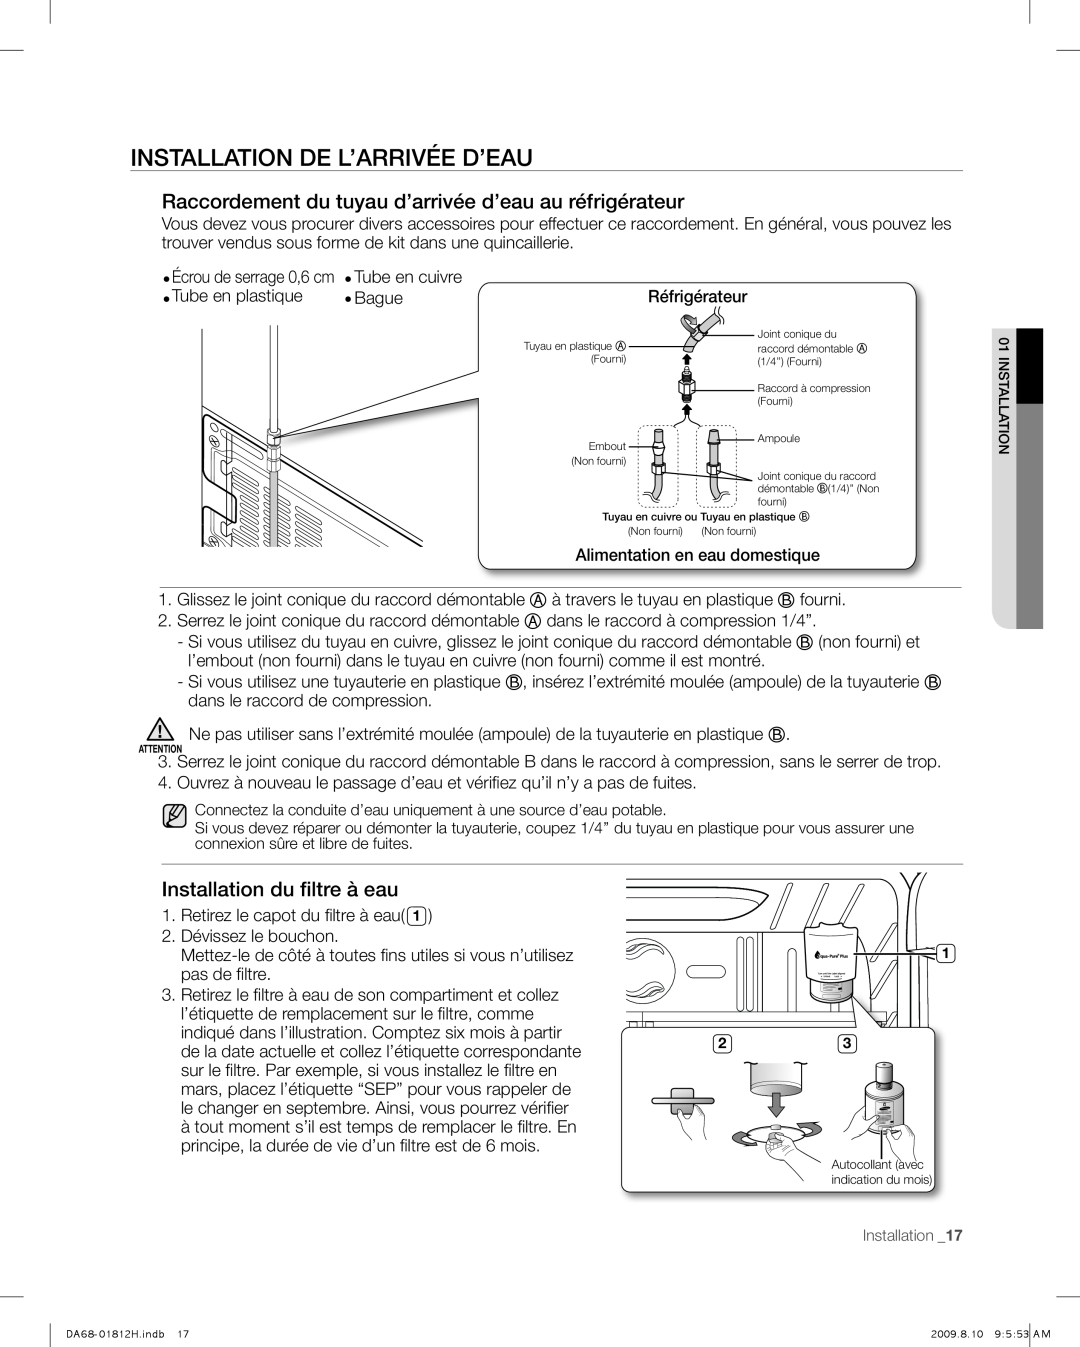 Samsung RF263 user manual Installation De L’Arrivée D’Eau, Installation du filtre à eau 